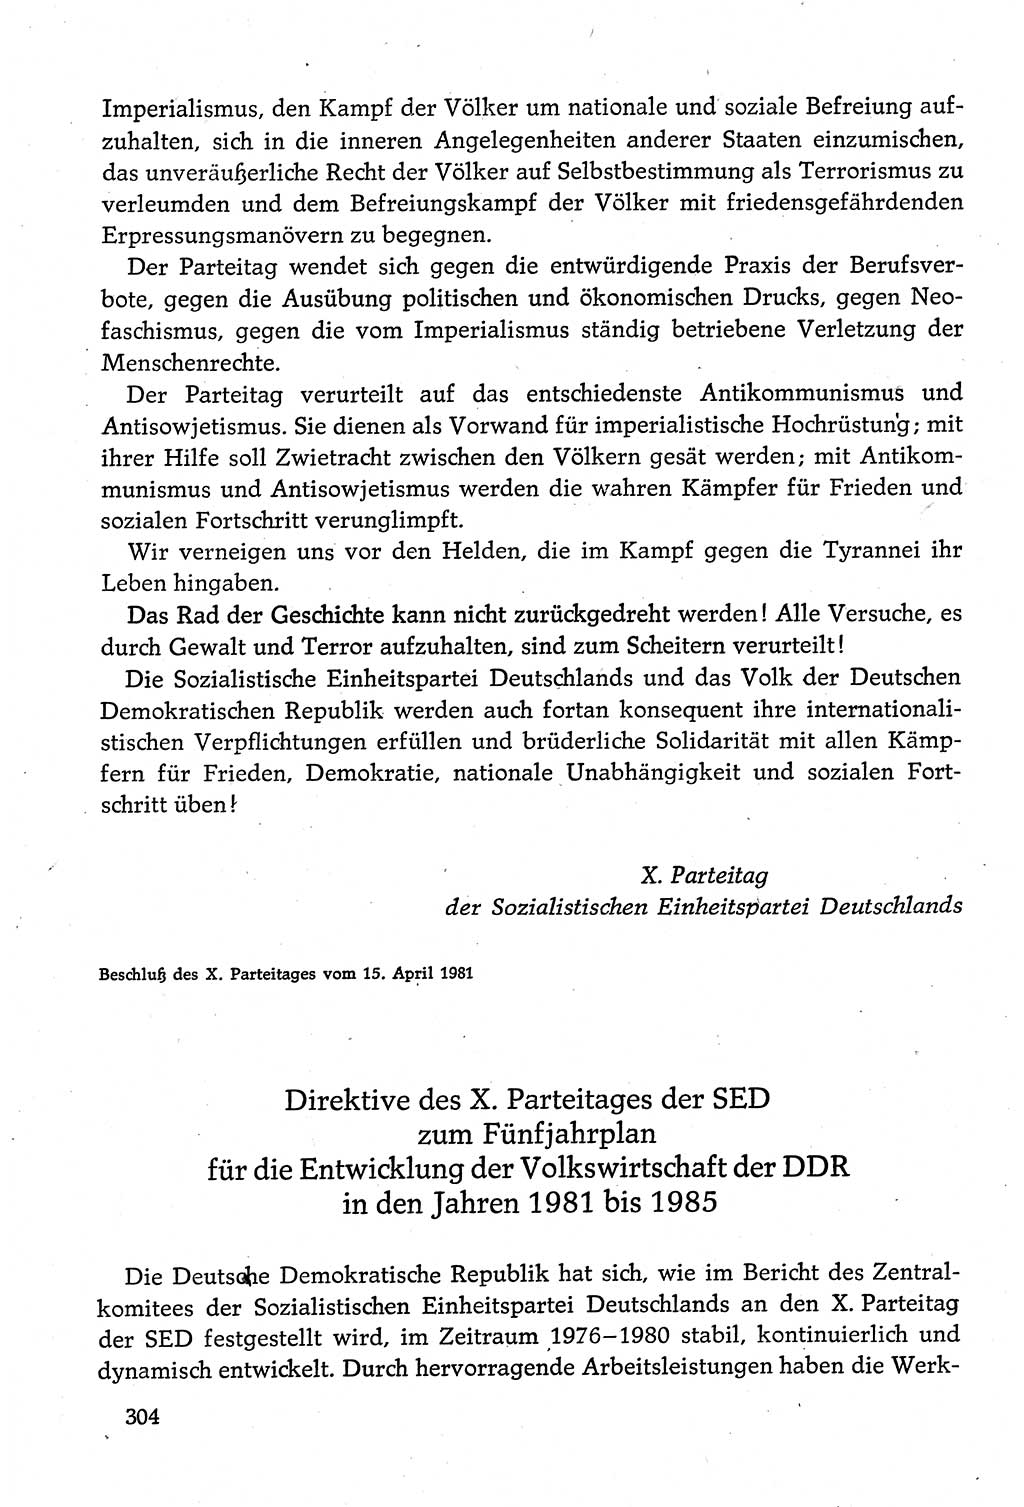 Dokumente der Sozialistischen Einheitspartei Deutschlands (SED) [Deutsche Demokratische Republik (DDR)] 1980-1981, Seite 304 (Dok. SED DDR 1980-1981, S. 304)